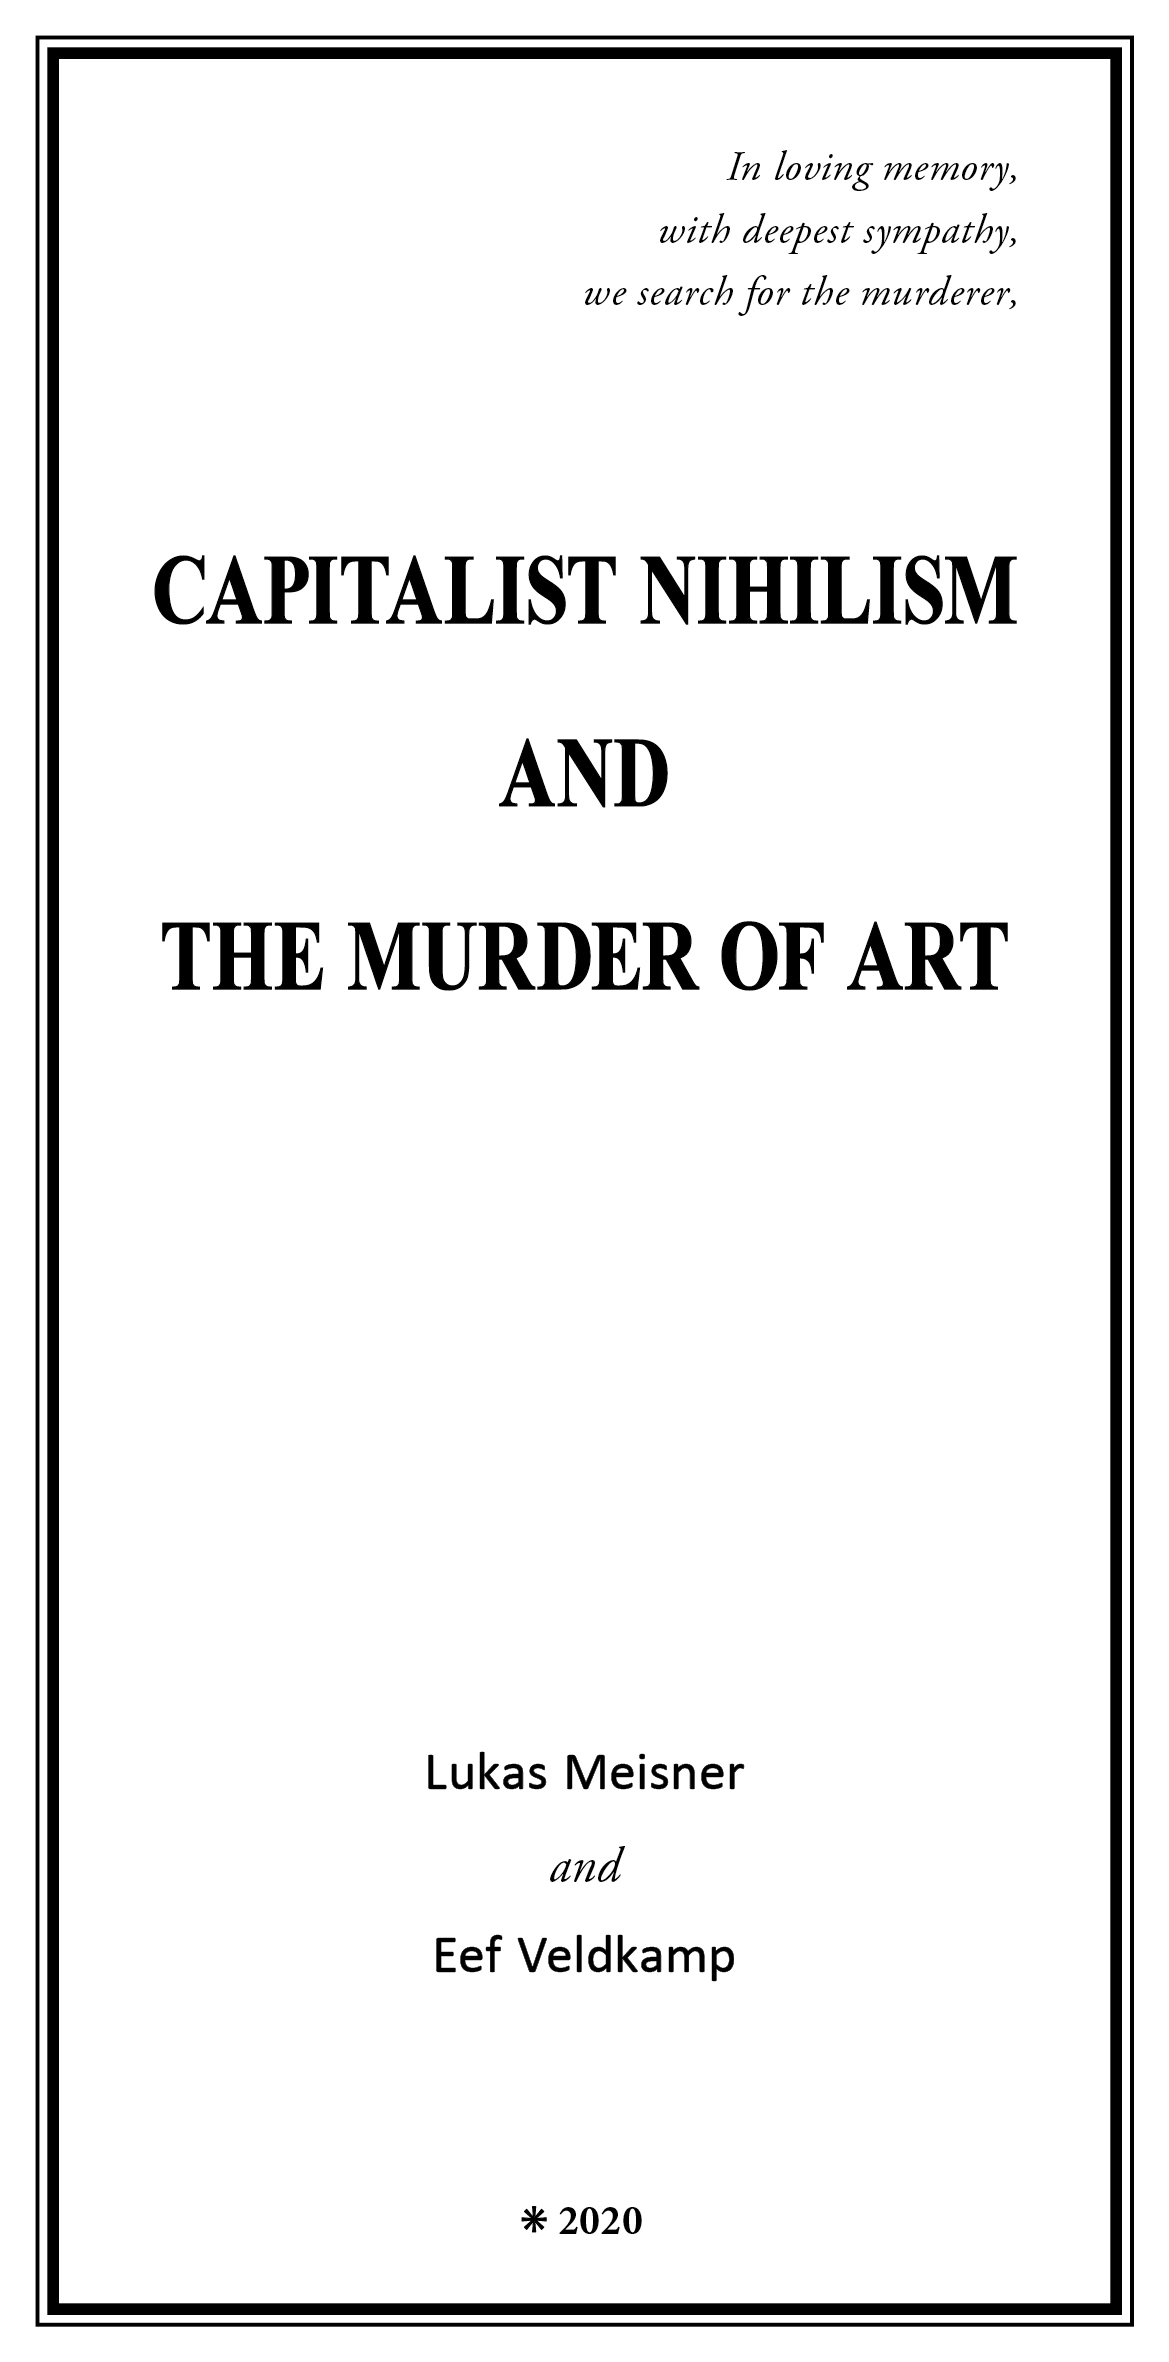 Capitalist Nihilism and the Murder of Art - Lukas Meisner & Eef Veldkamp